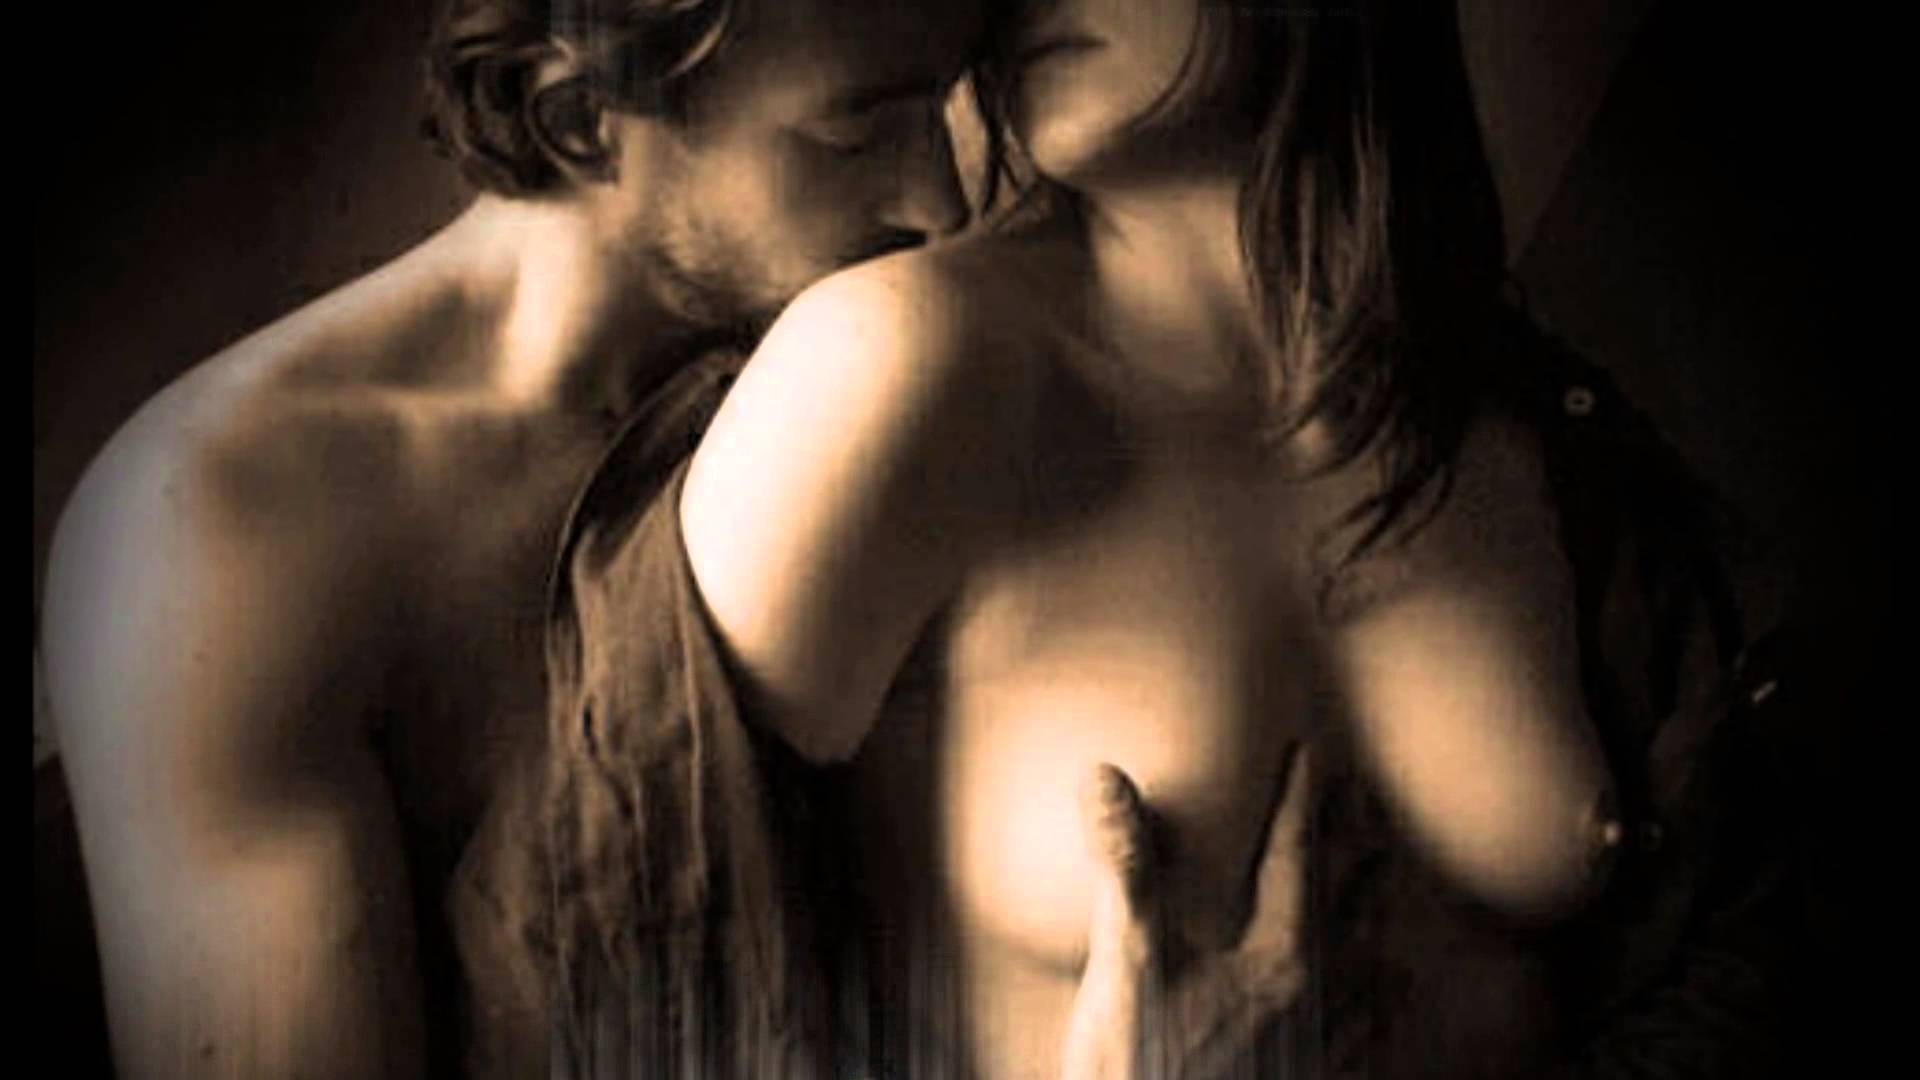 целовать женскую грудь на фотографиях фото 115